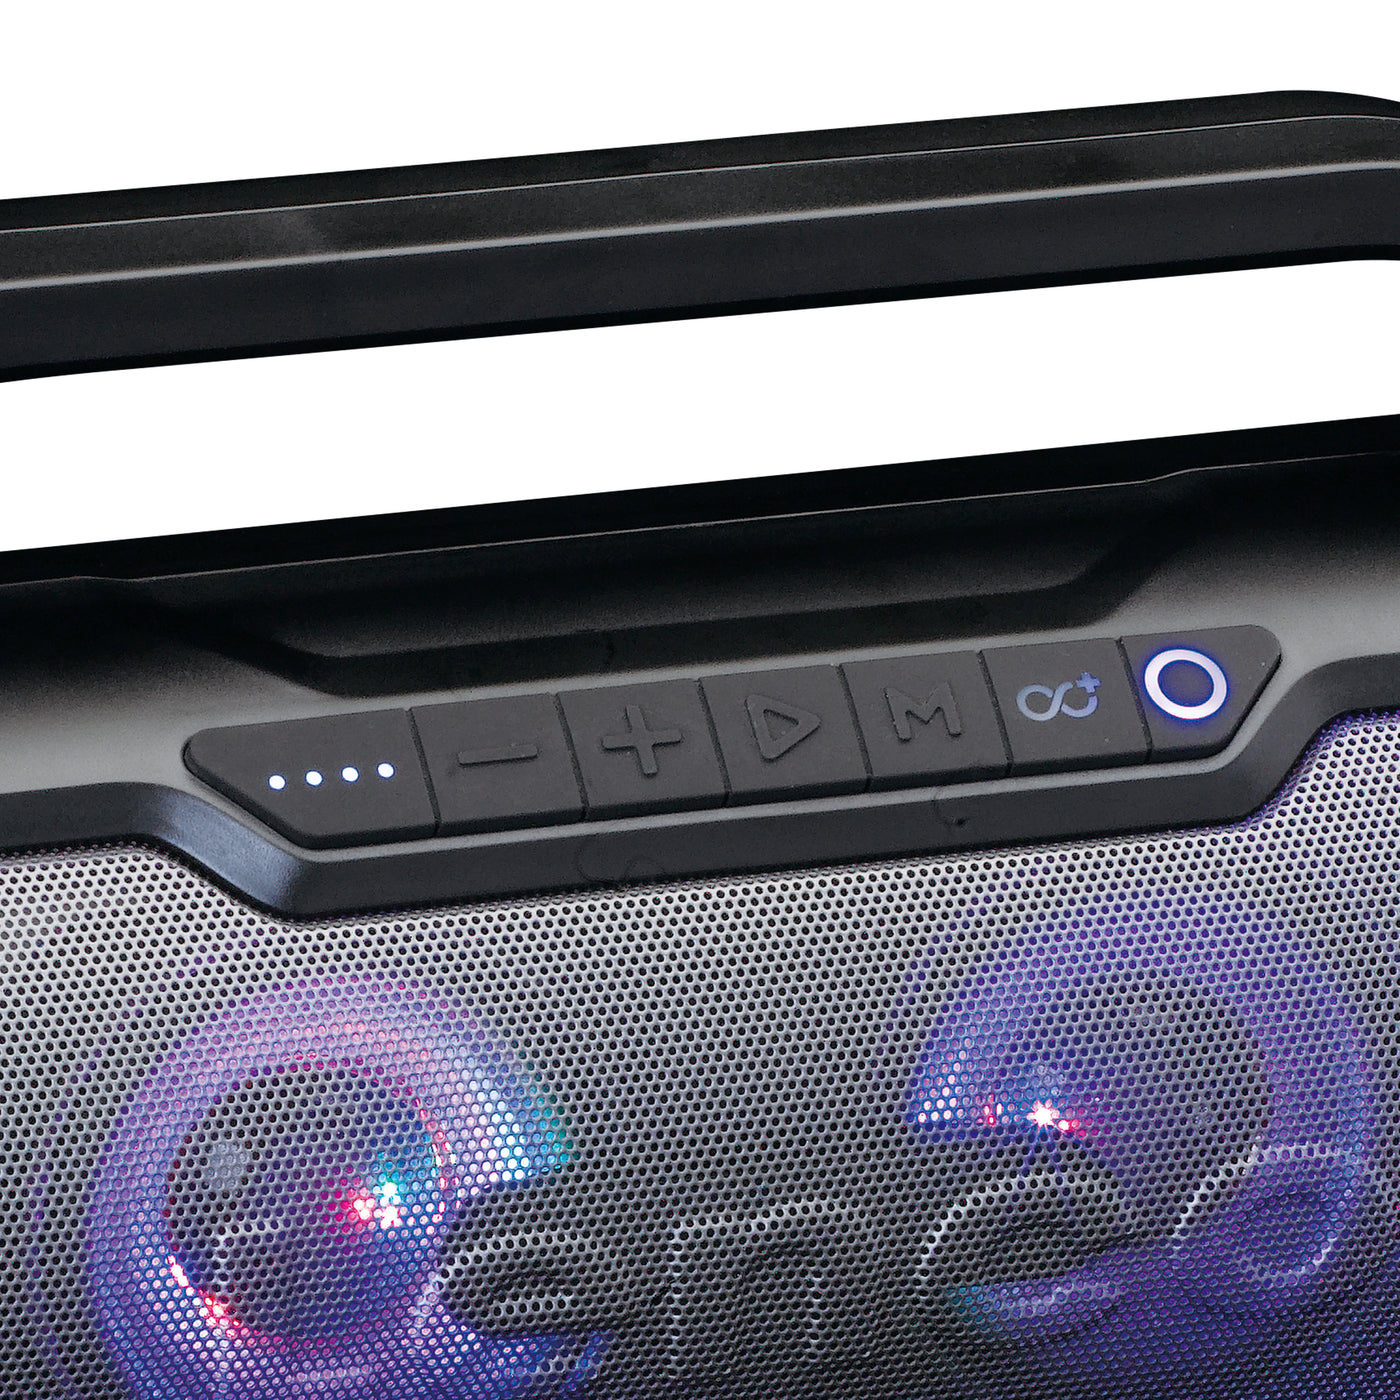 LENCO SPR-070BK - Odporny na zachlapania głośnik Bluetooth® z radiem FM, USB, SD i oświetleniem imprezowym - Czarny